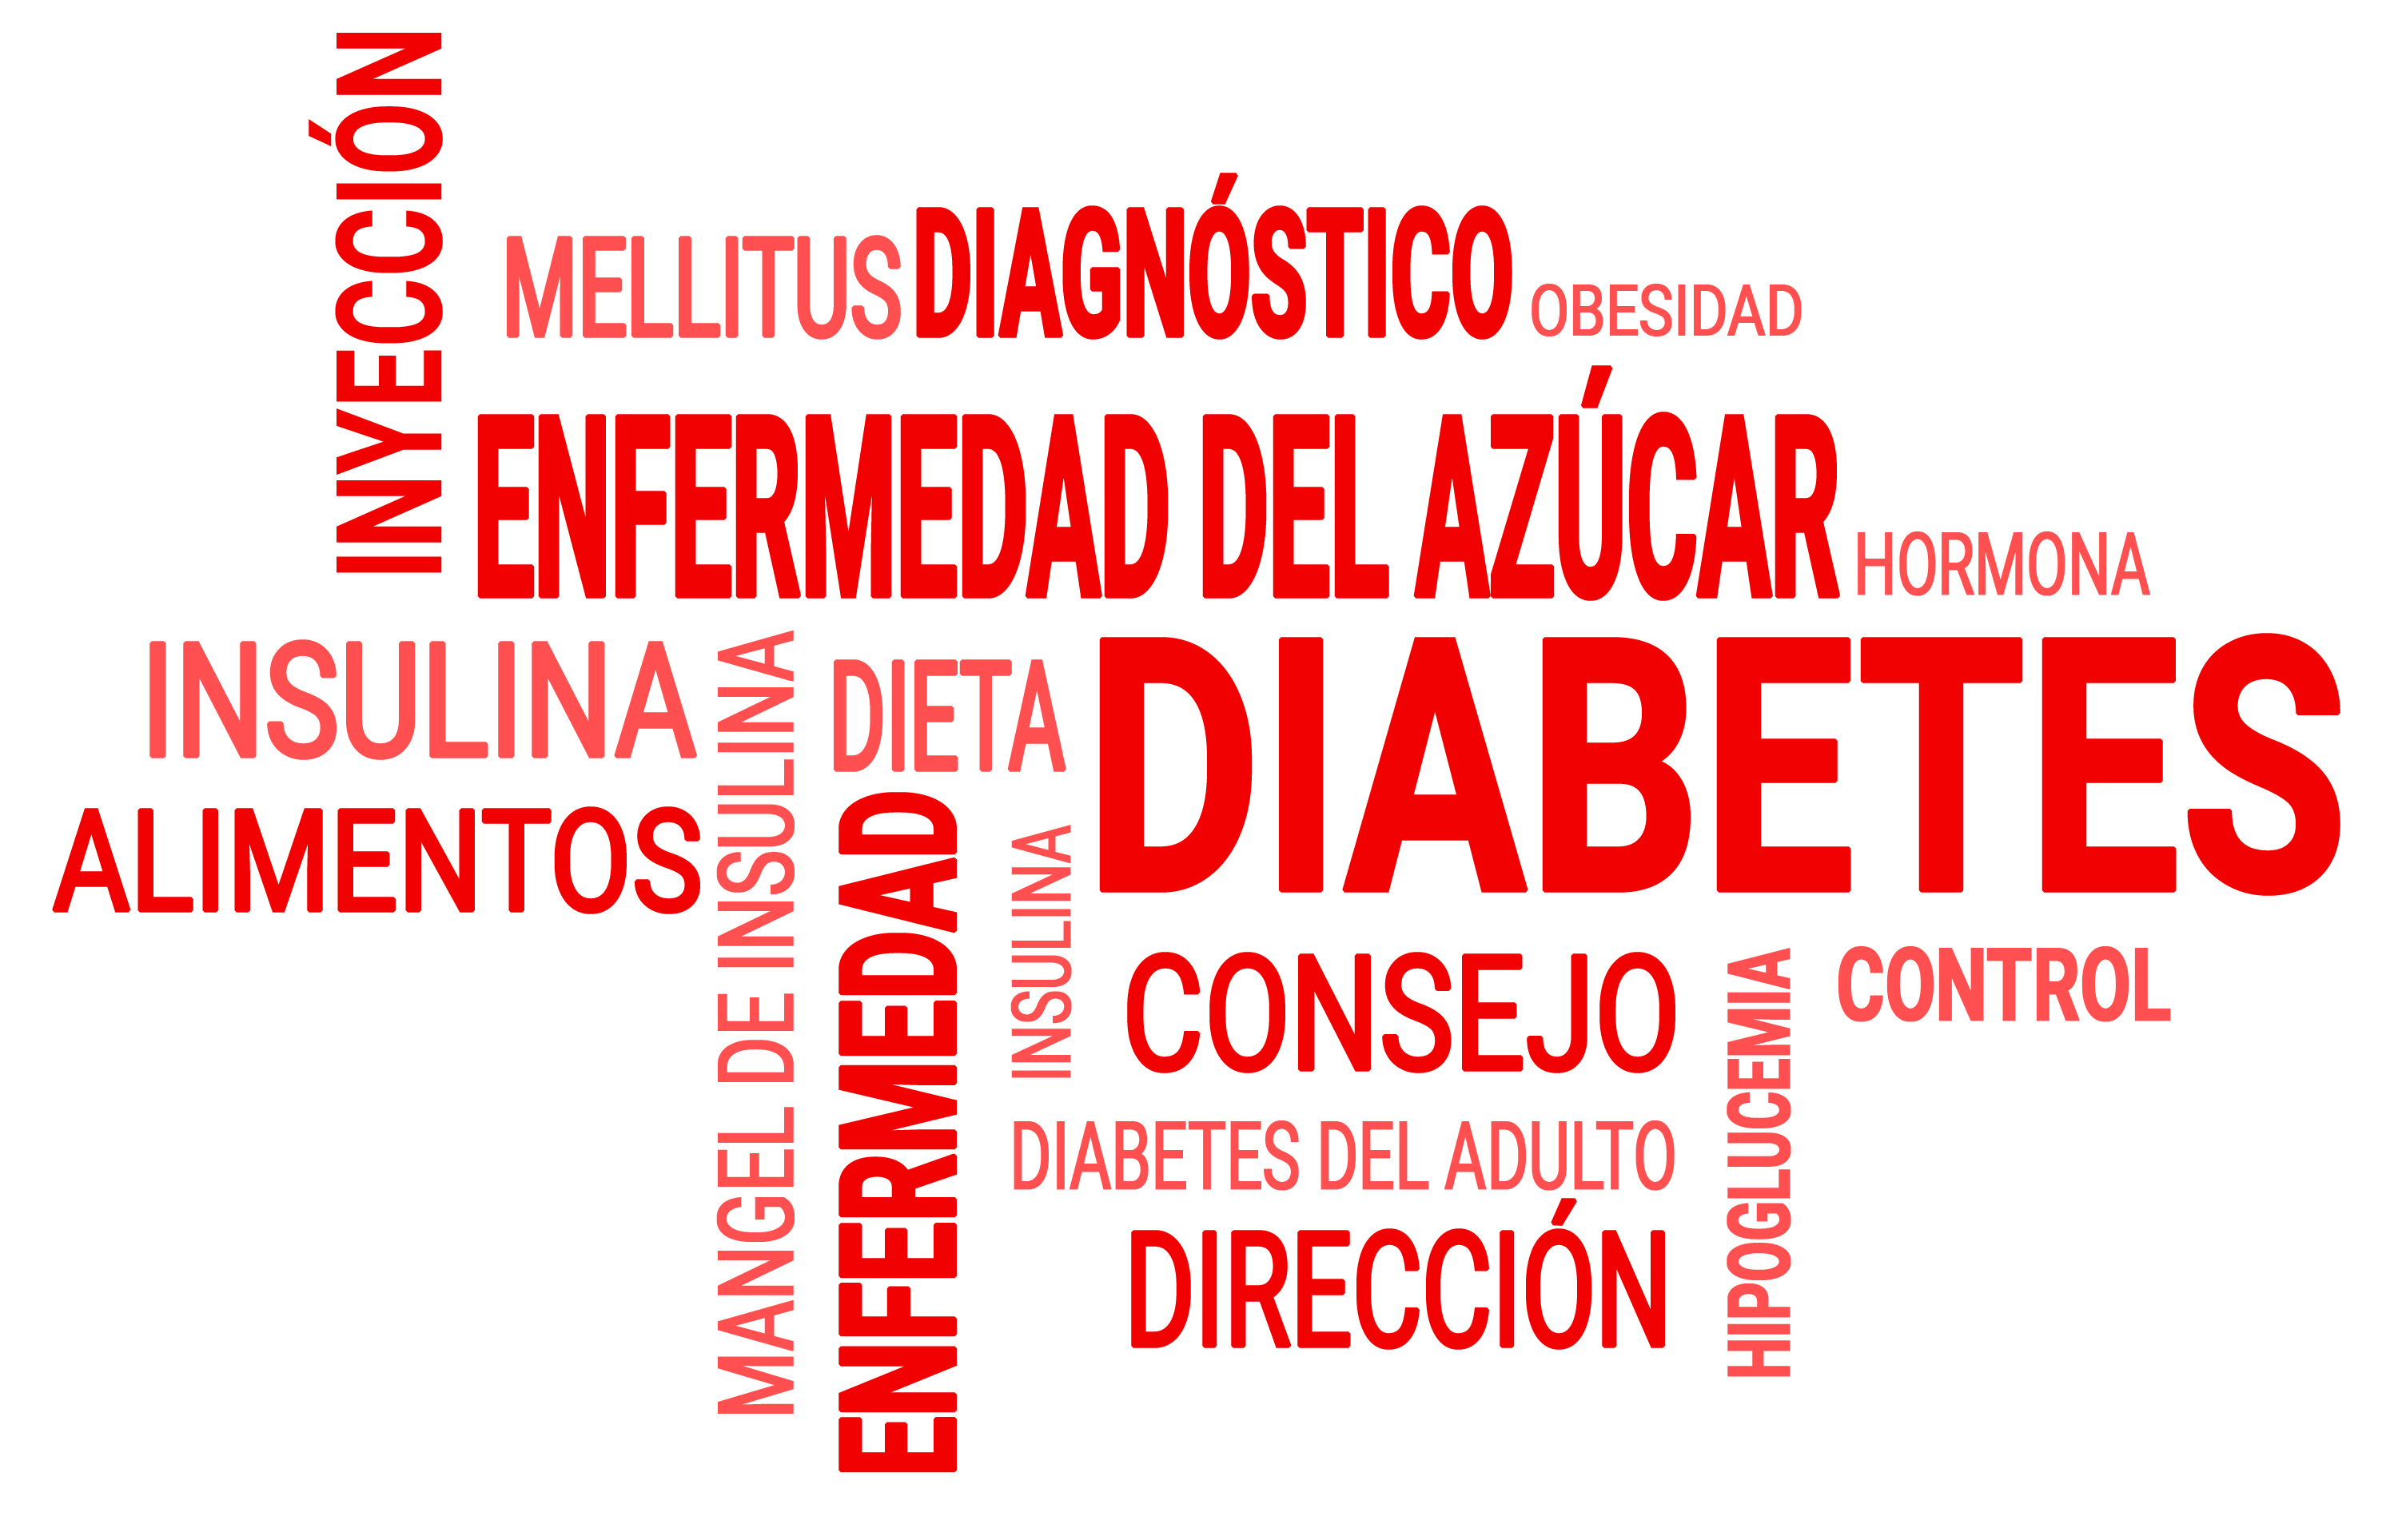 El Centro Alemán de Diabetes lleva más de 50 años investigando la diabetes mellitus.